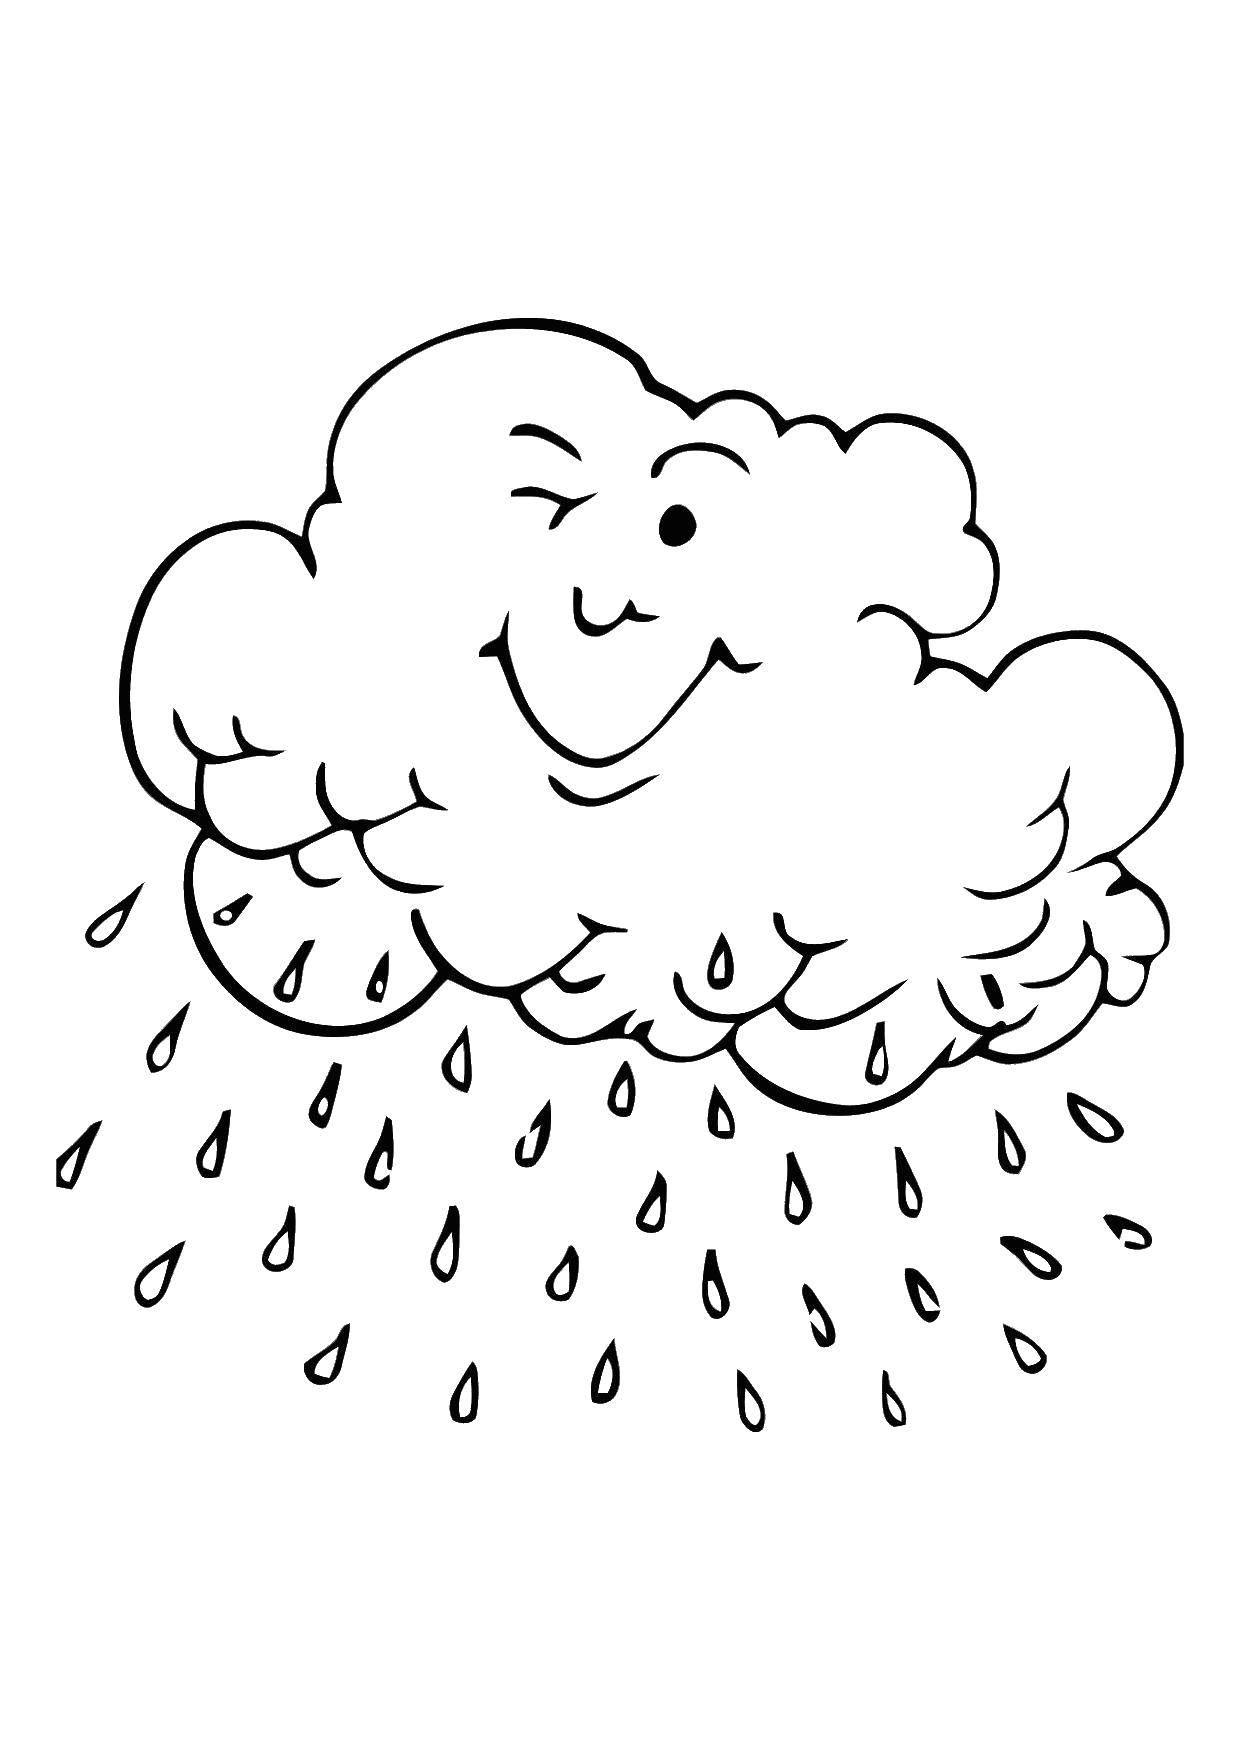 Раскрашенная картинка погоды - дождь и тучи (погода, дождь, тучи)